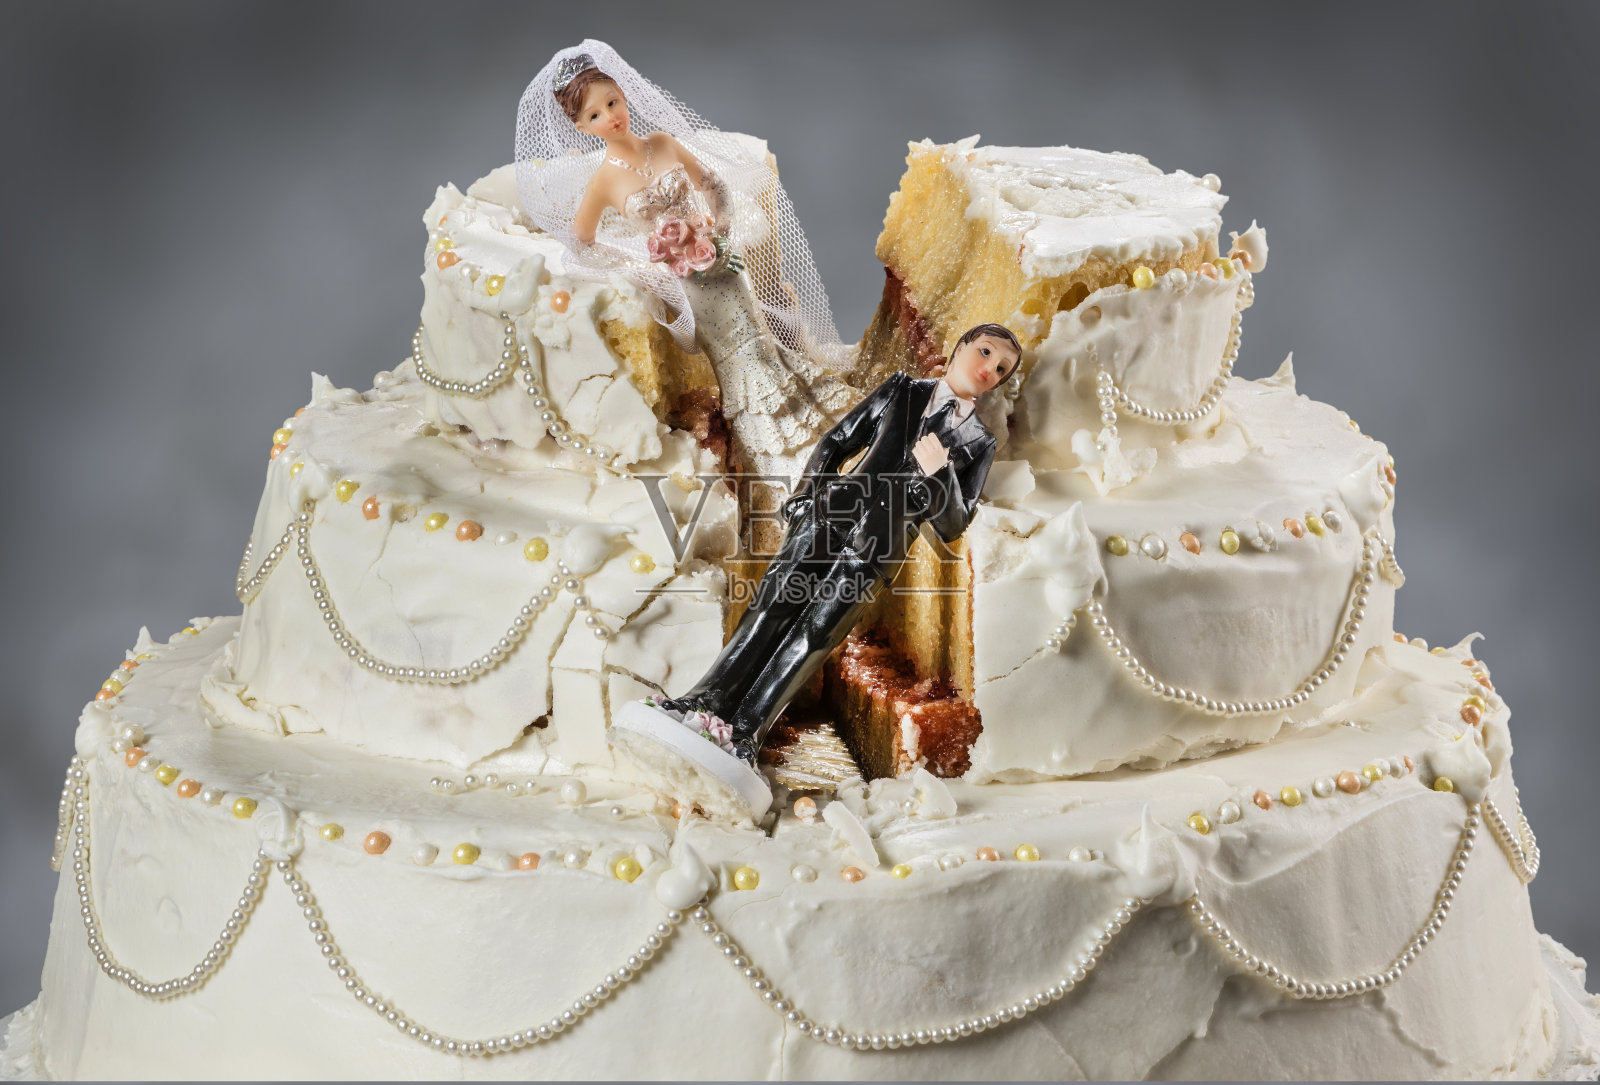 新娘和新郎的小雕像倒在了毁了的婚礼蛋糕上照片摄影图片